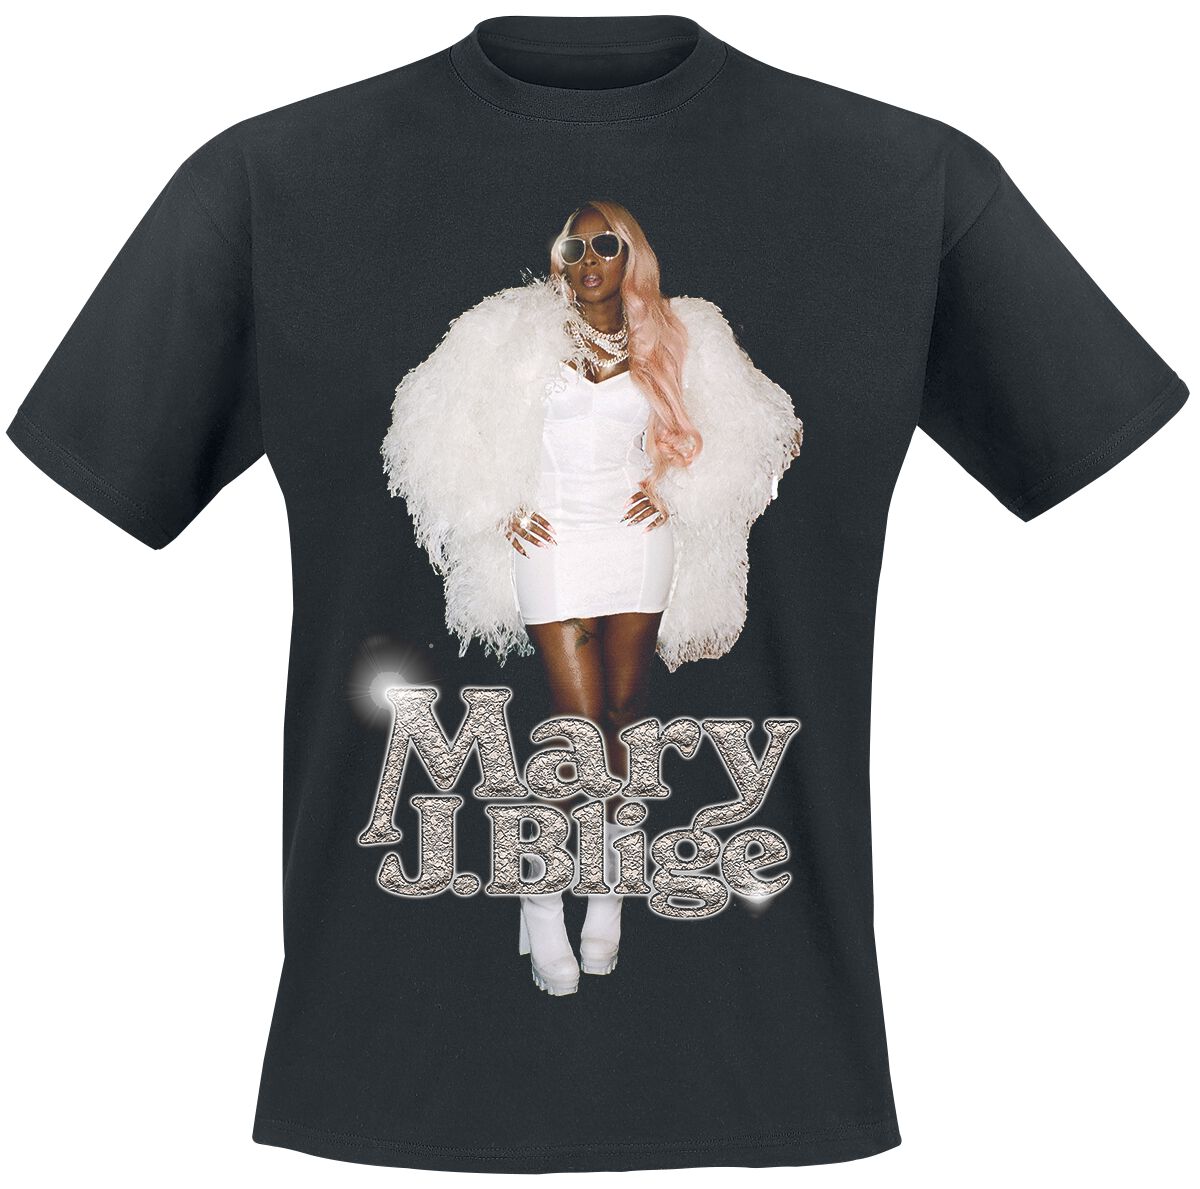 Mary J. Blige T-Shirt - Photo Glossy - S bis 3XL - für Männer - Größe XXL - schwarz  - Lizenziertes Merchandise!